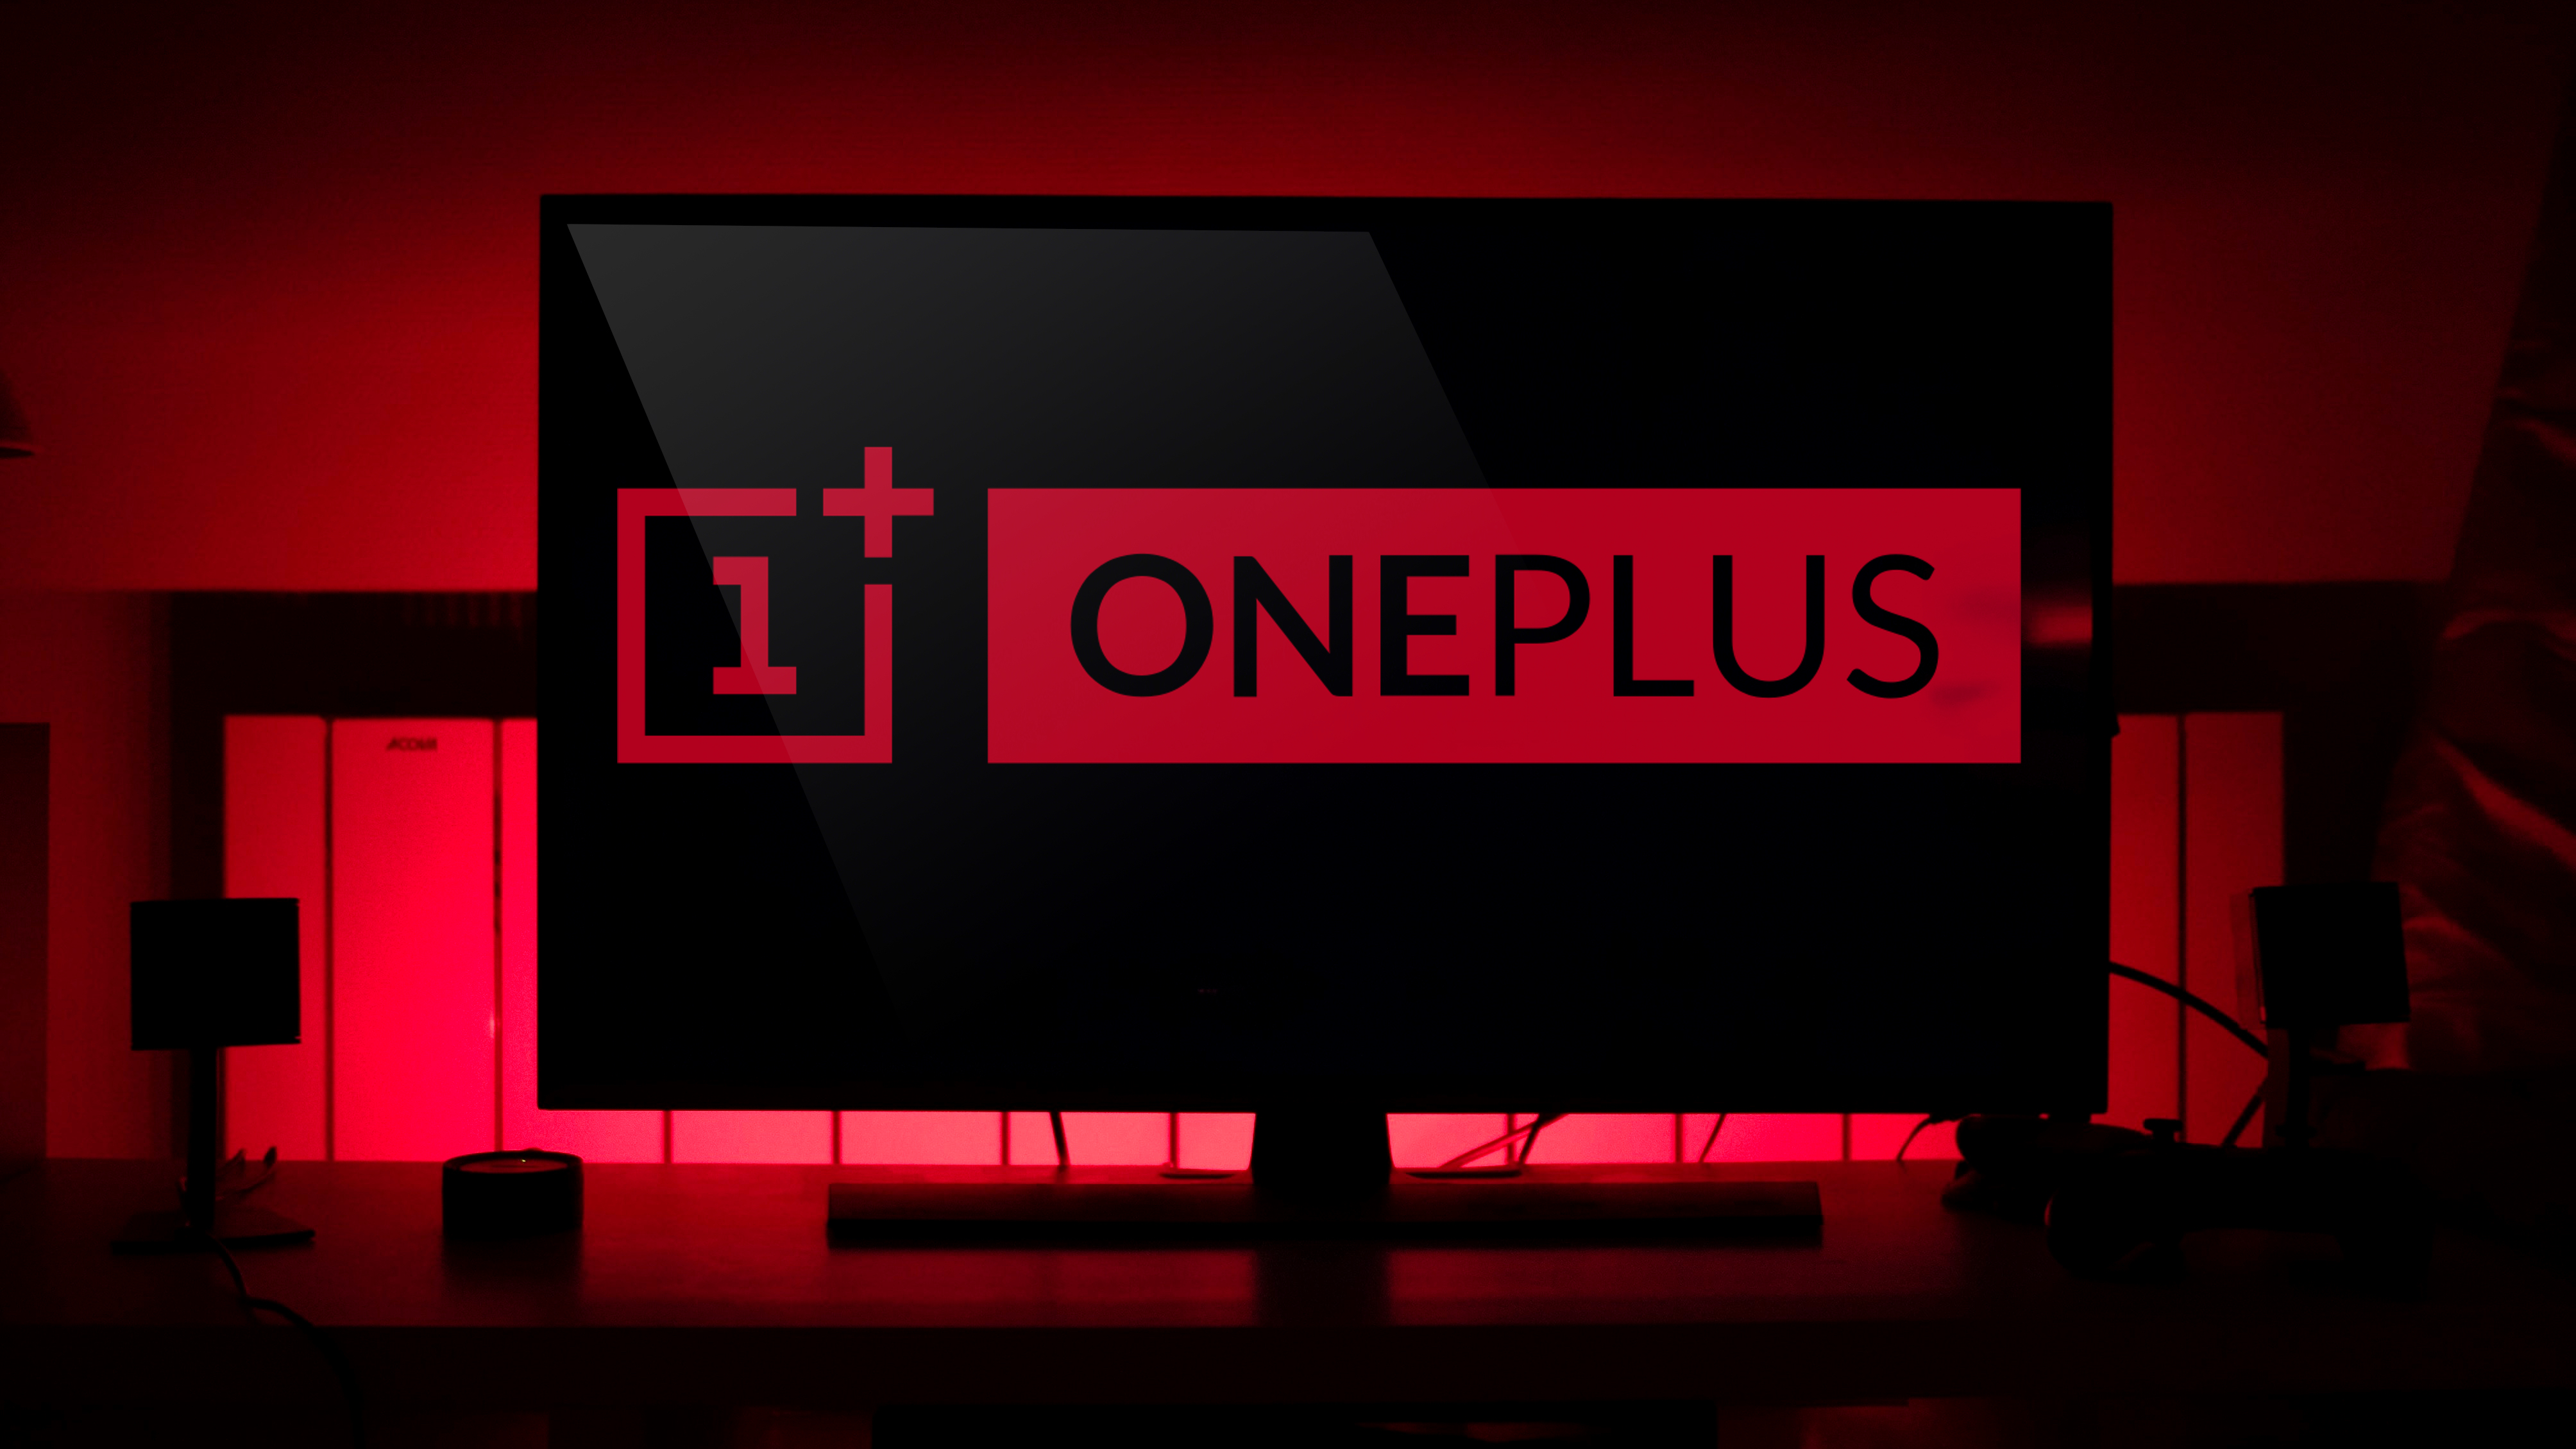 إشارات الرئيس التنفيذي لشركة OnePlus في تلفزيون قادم ؛ الهند للحصول عليها أولا